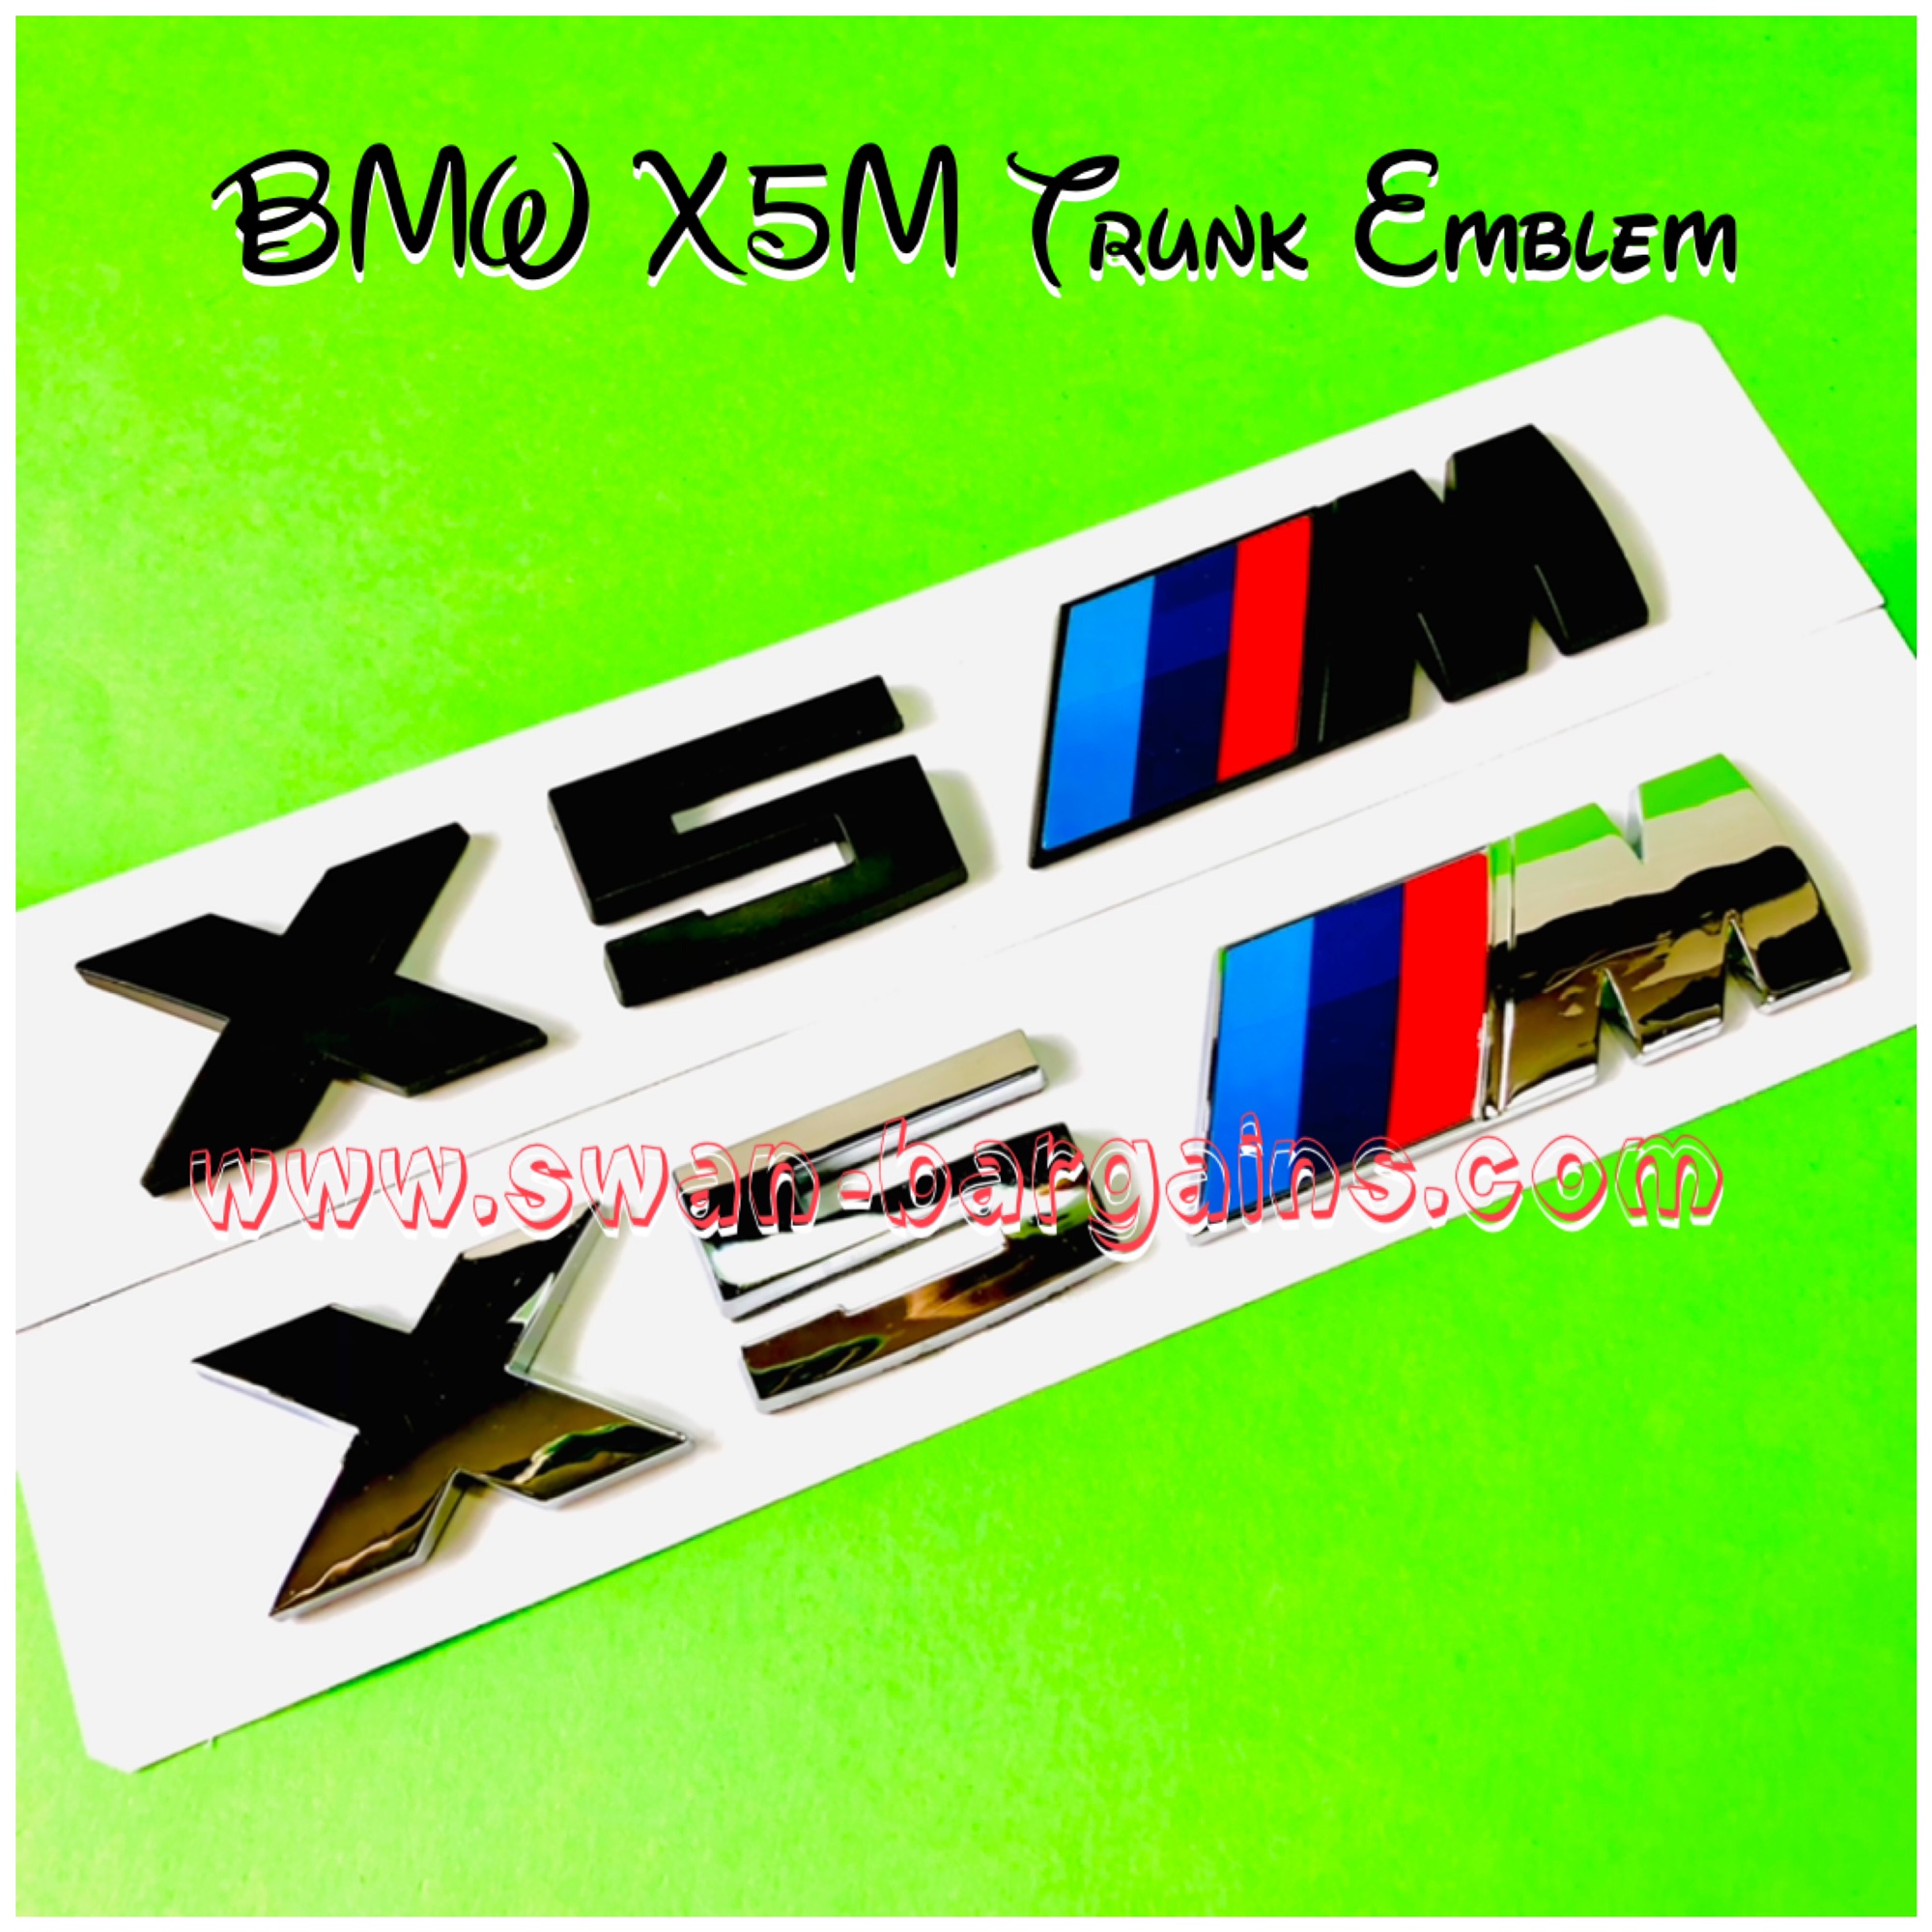 BMW X5M Trunk Lettering Emblem Singapore